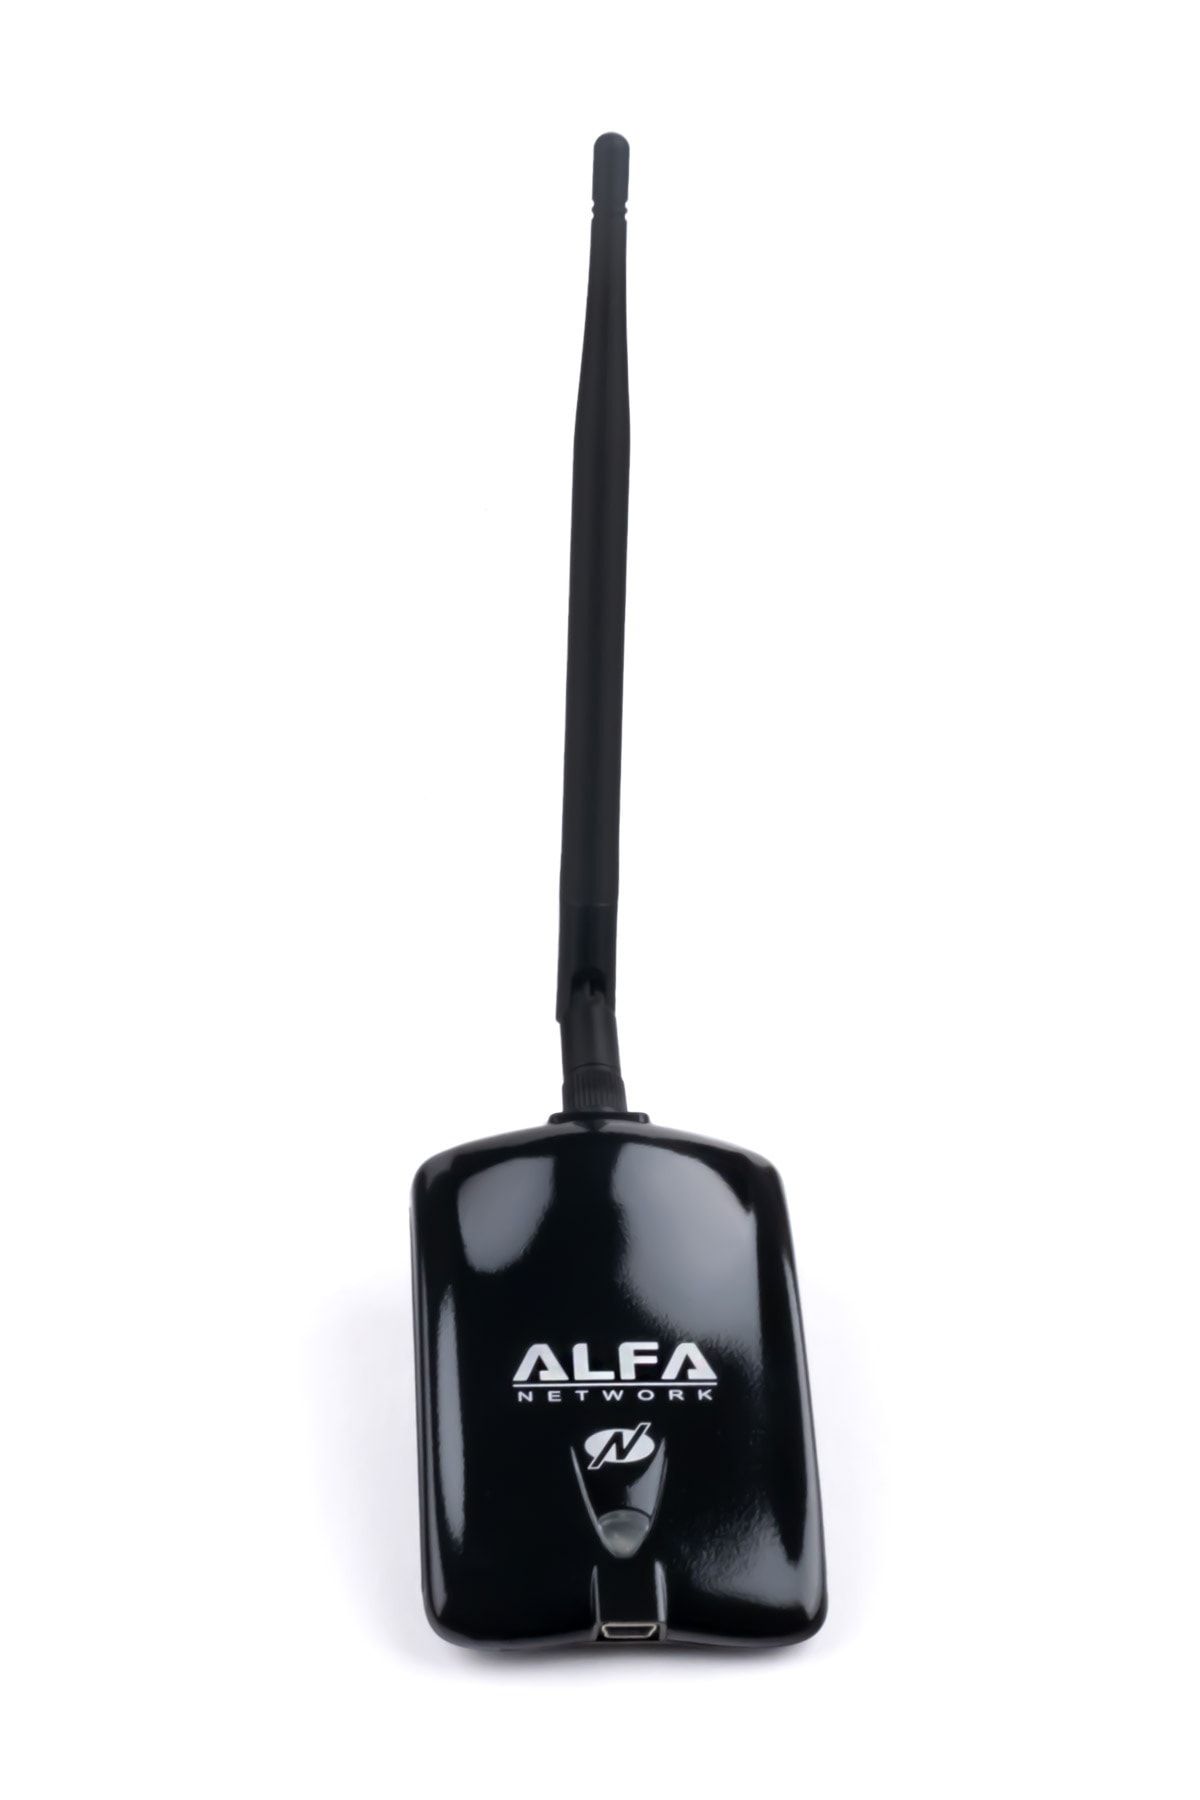 Alfa Awus036nha Usb Wifi Adaptörü Kali Linux Fiyatı, Yorumları  Trendyol